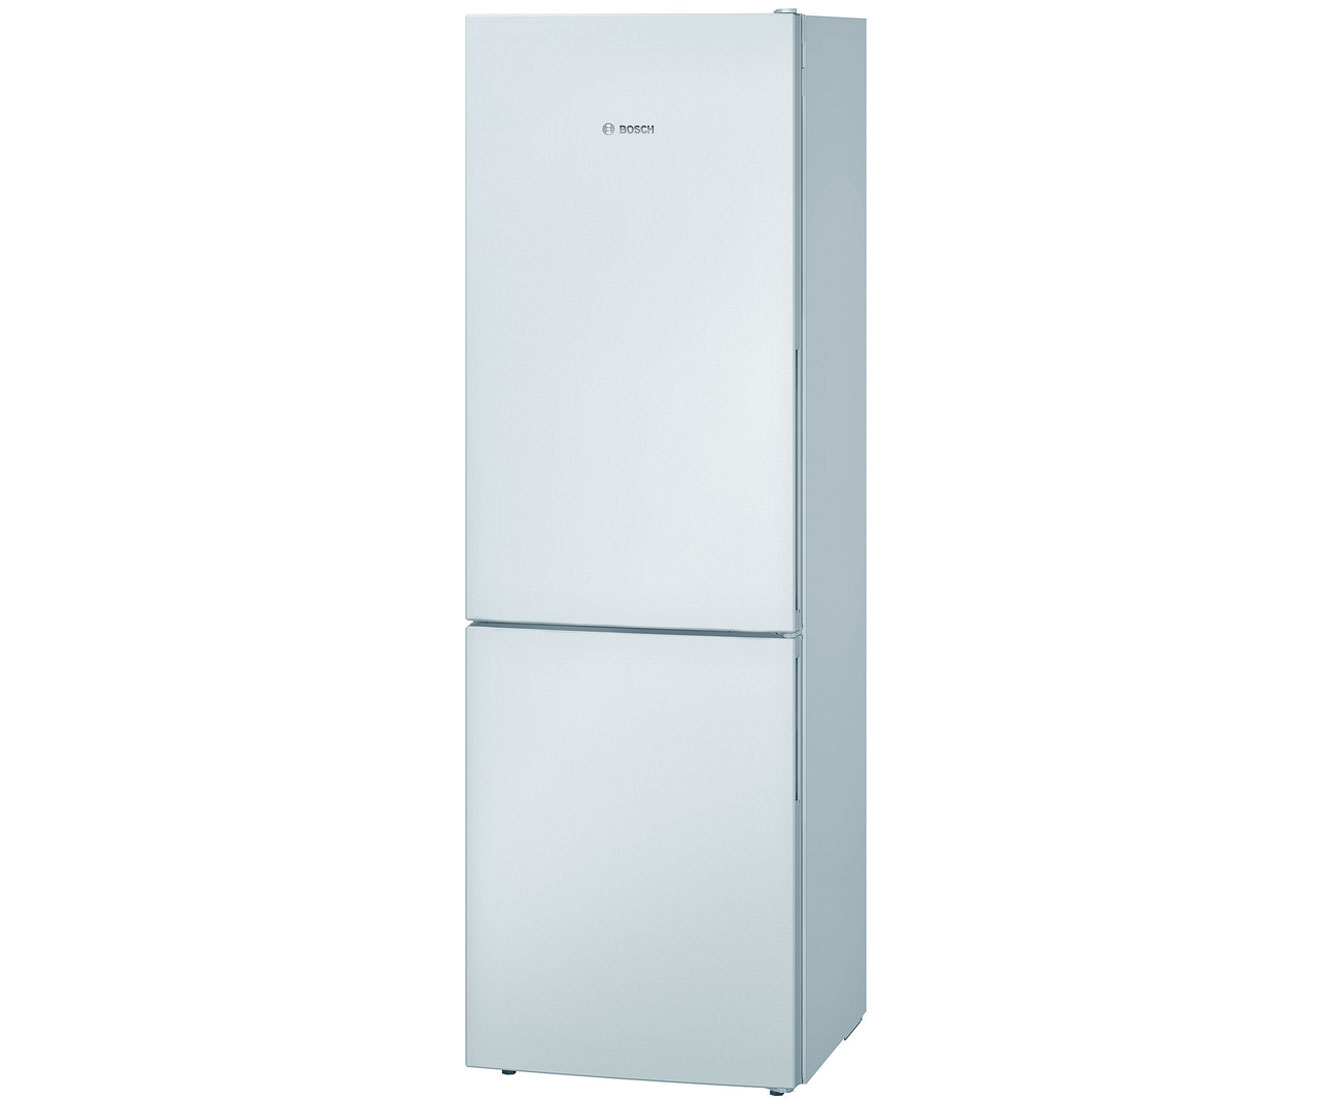 Bosch Serie 4 KGV36VW32G Free Standing Fridge Freezer in White